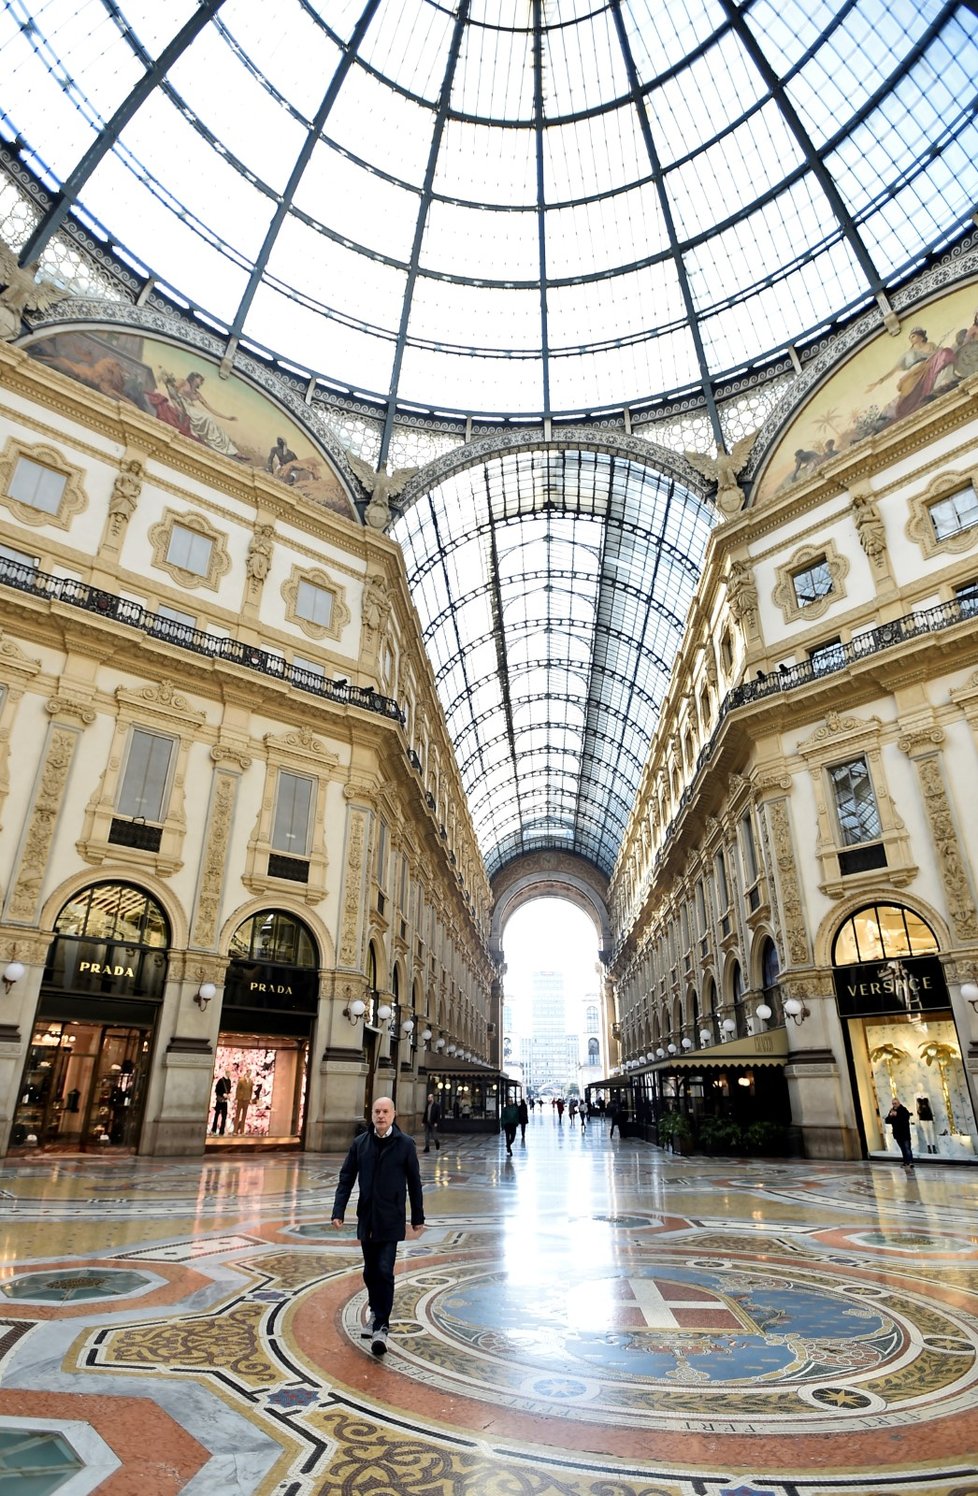 Lidé v rouškách v galerii Galleria Vittorio Emanuele II v italském Miláně